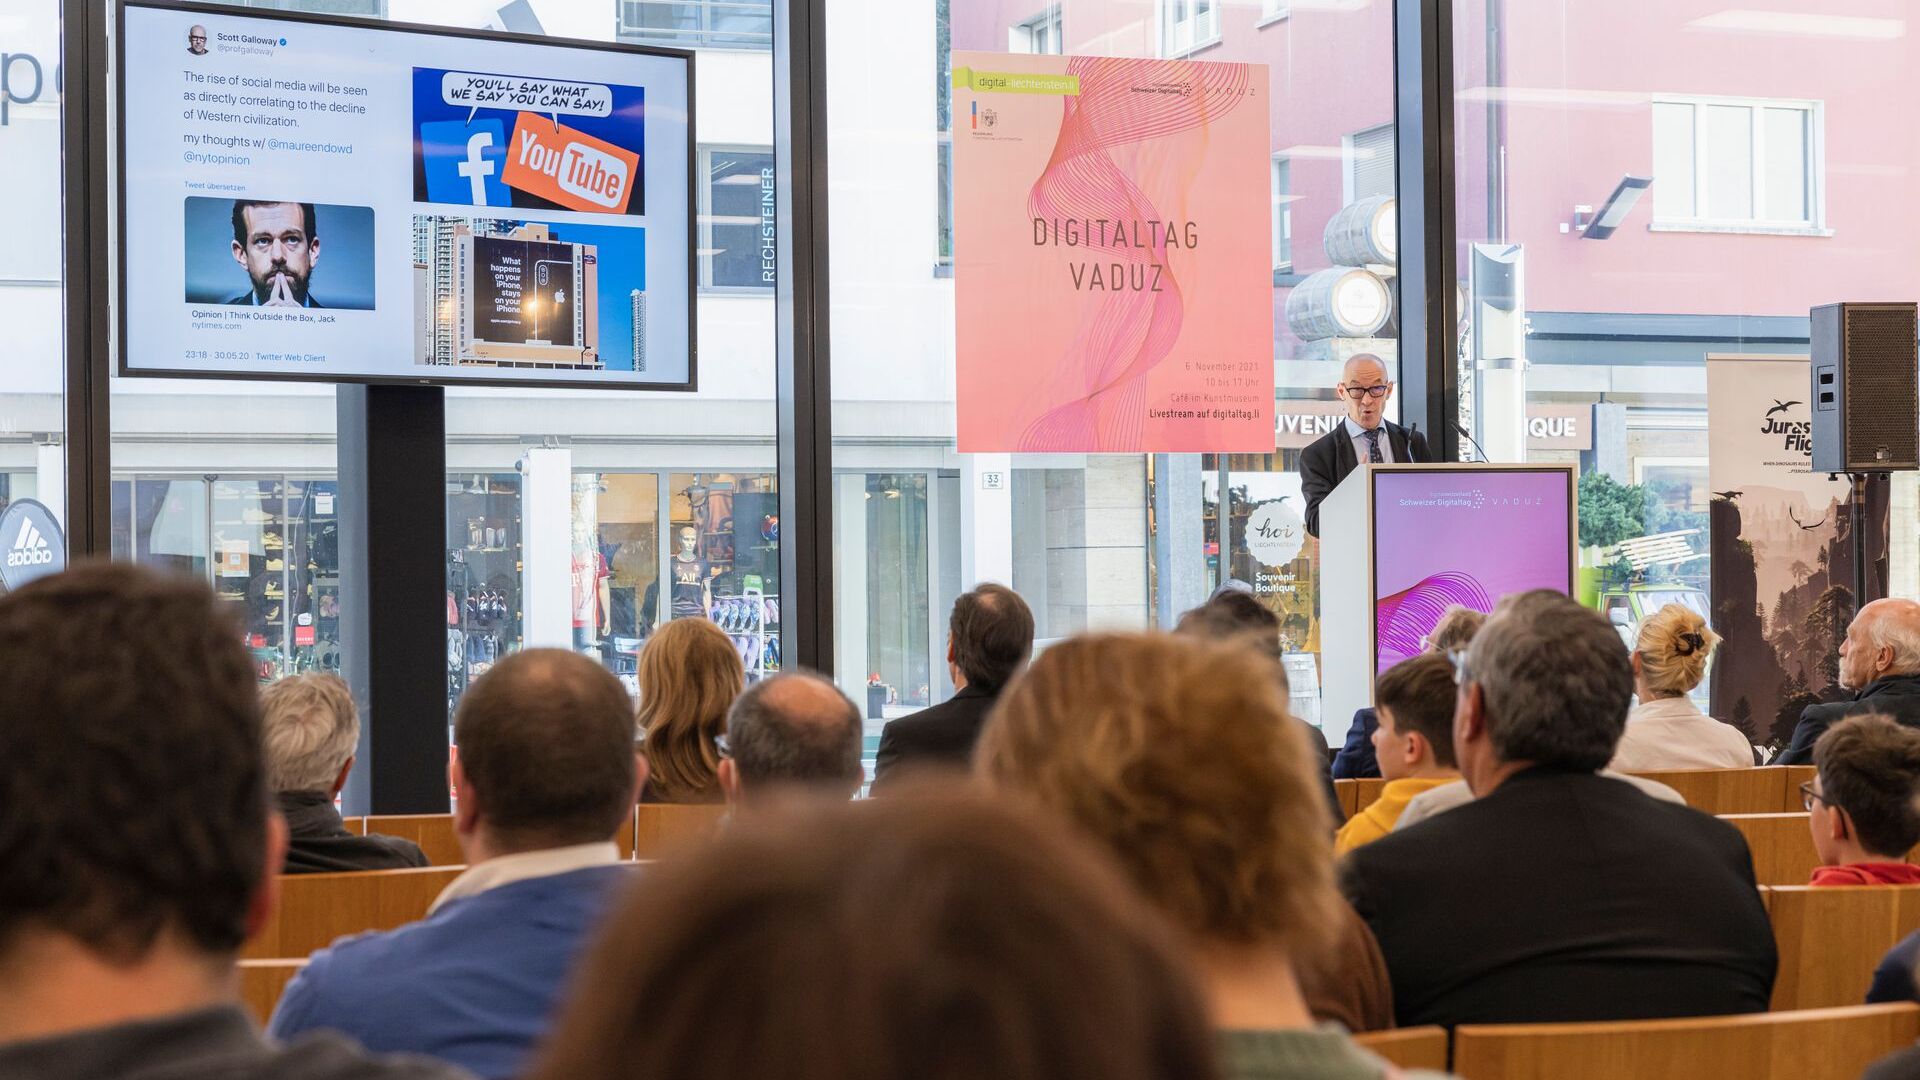 De "Digitaltag Vaduz", verwelkomd door het Kunstmuseum van de hoofdstad van het Vorstendom Liechtenstein op zaterdag 6 november 2021, wekte het enthousiasme van het publiek en de sprekers naar analogie met de "Swiss Digital Day" van de volgende dag 10: de tussenkomst van de futurist en expert van Duitse trends David Bosshart